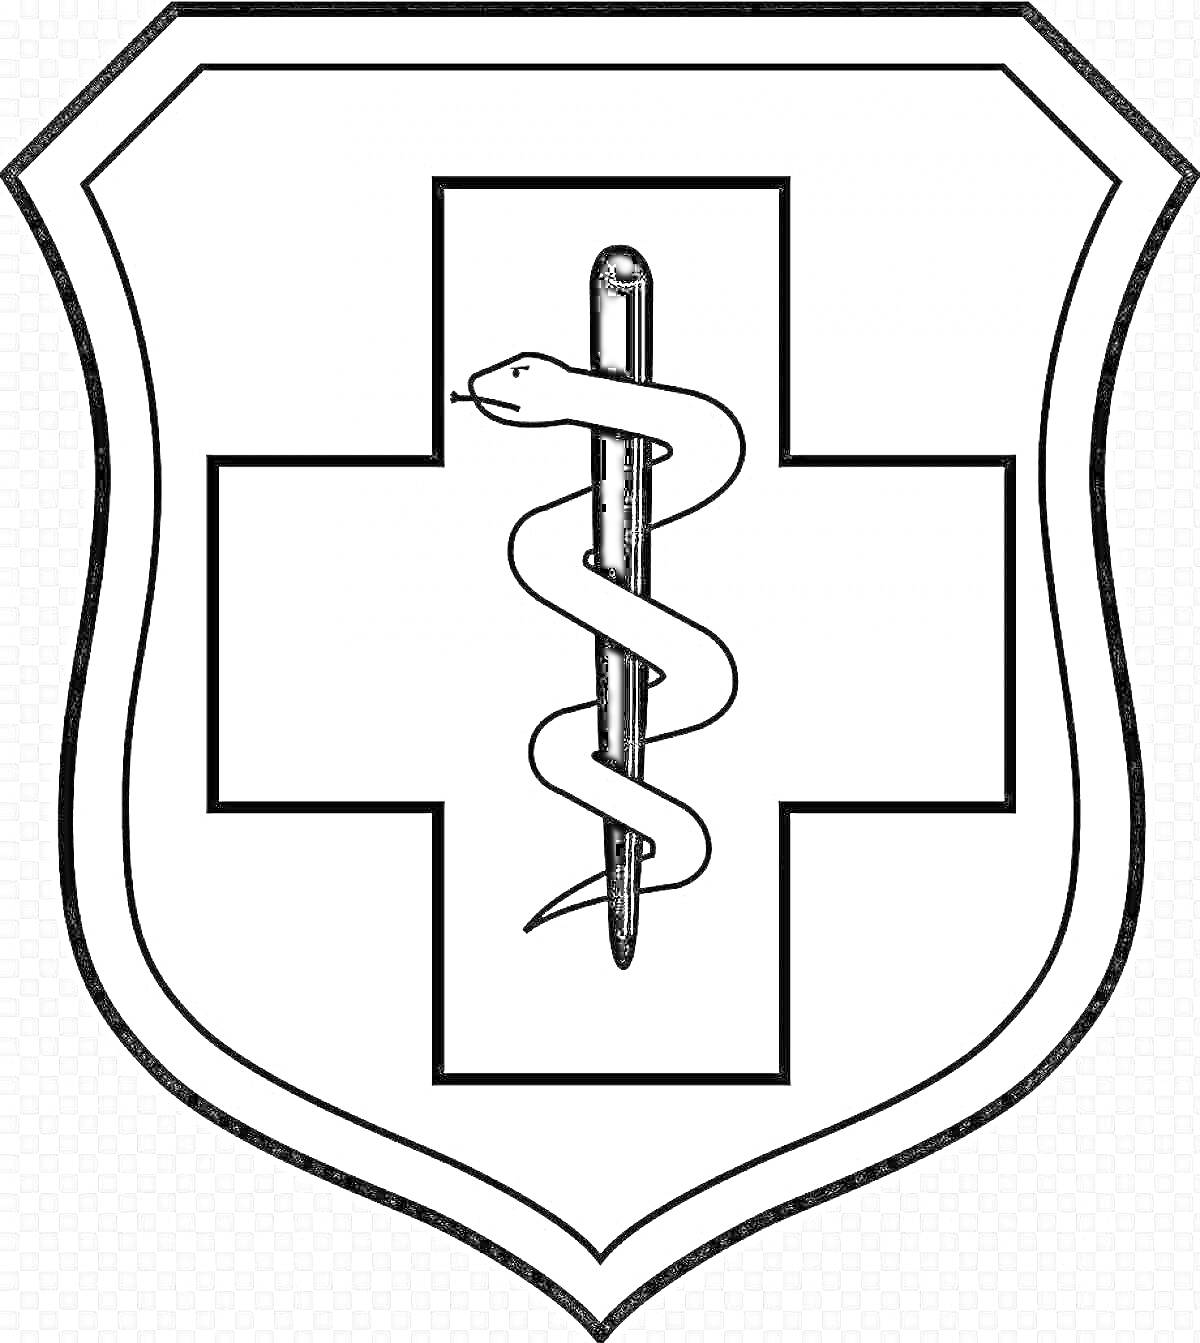 Щит с медицинским крестом и змейкой, обвивающей посох